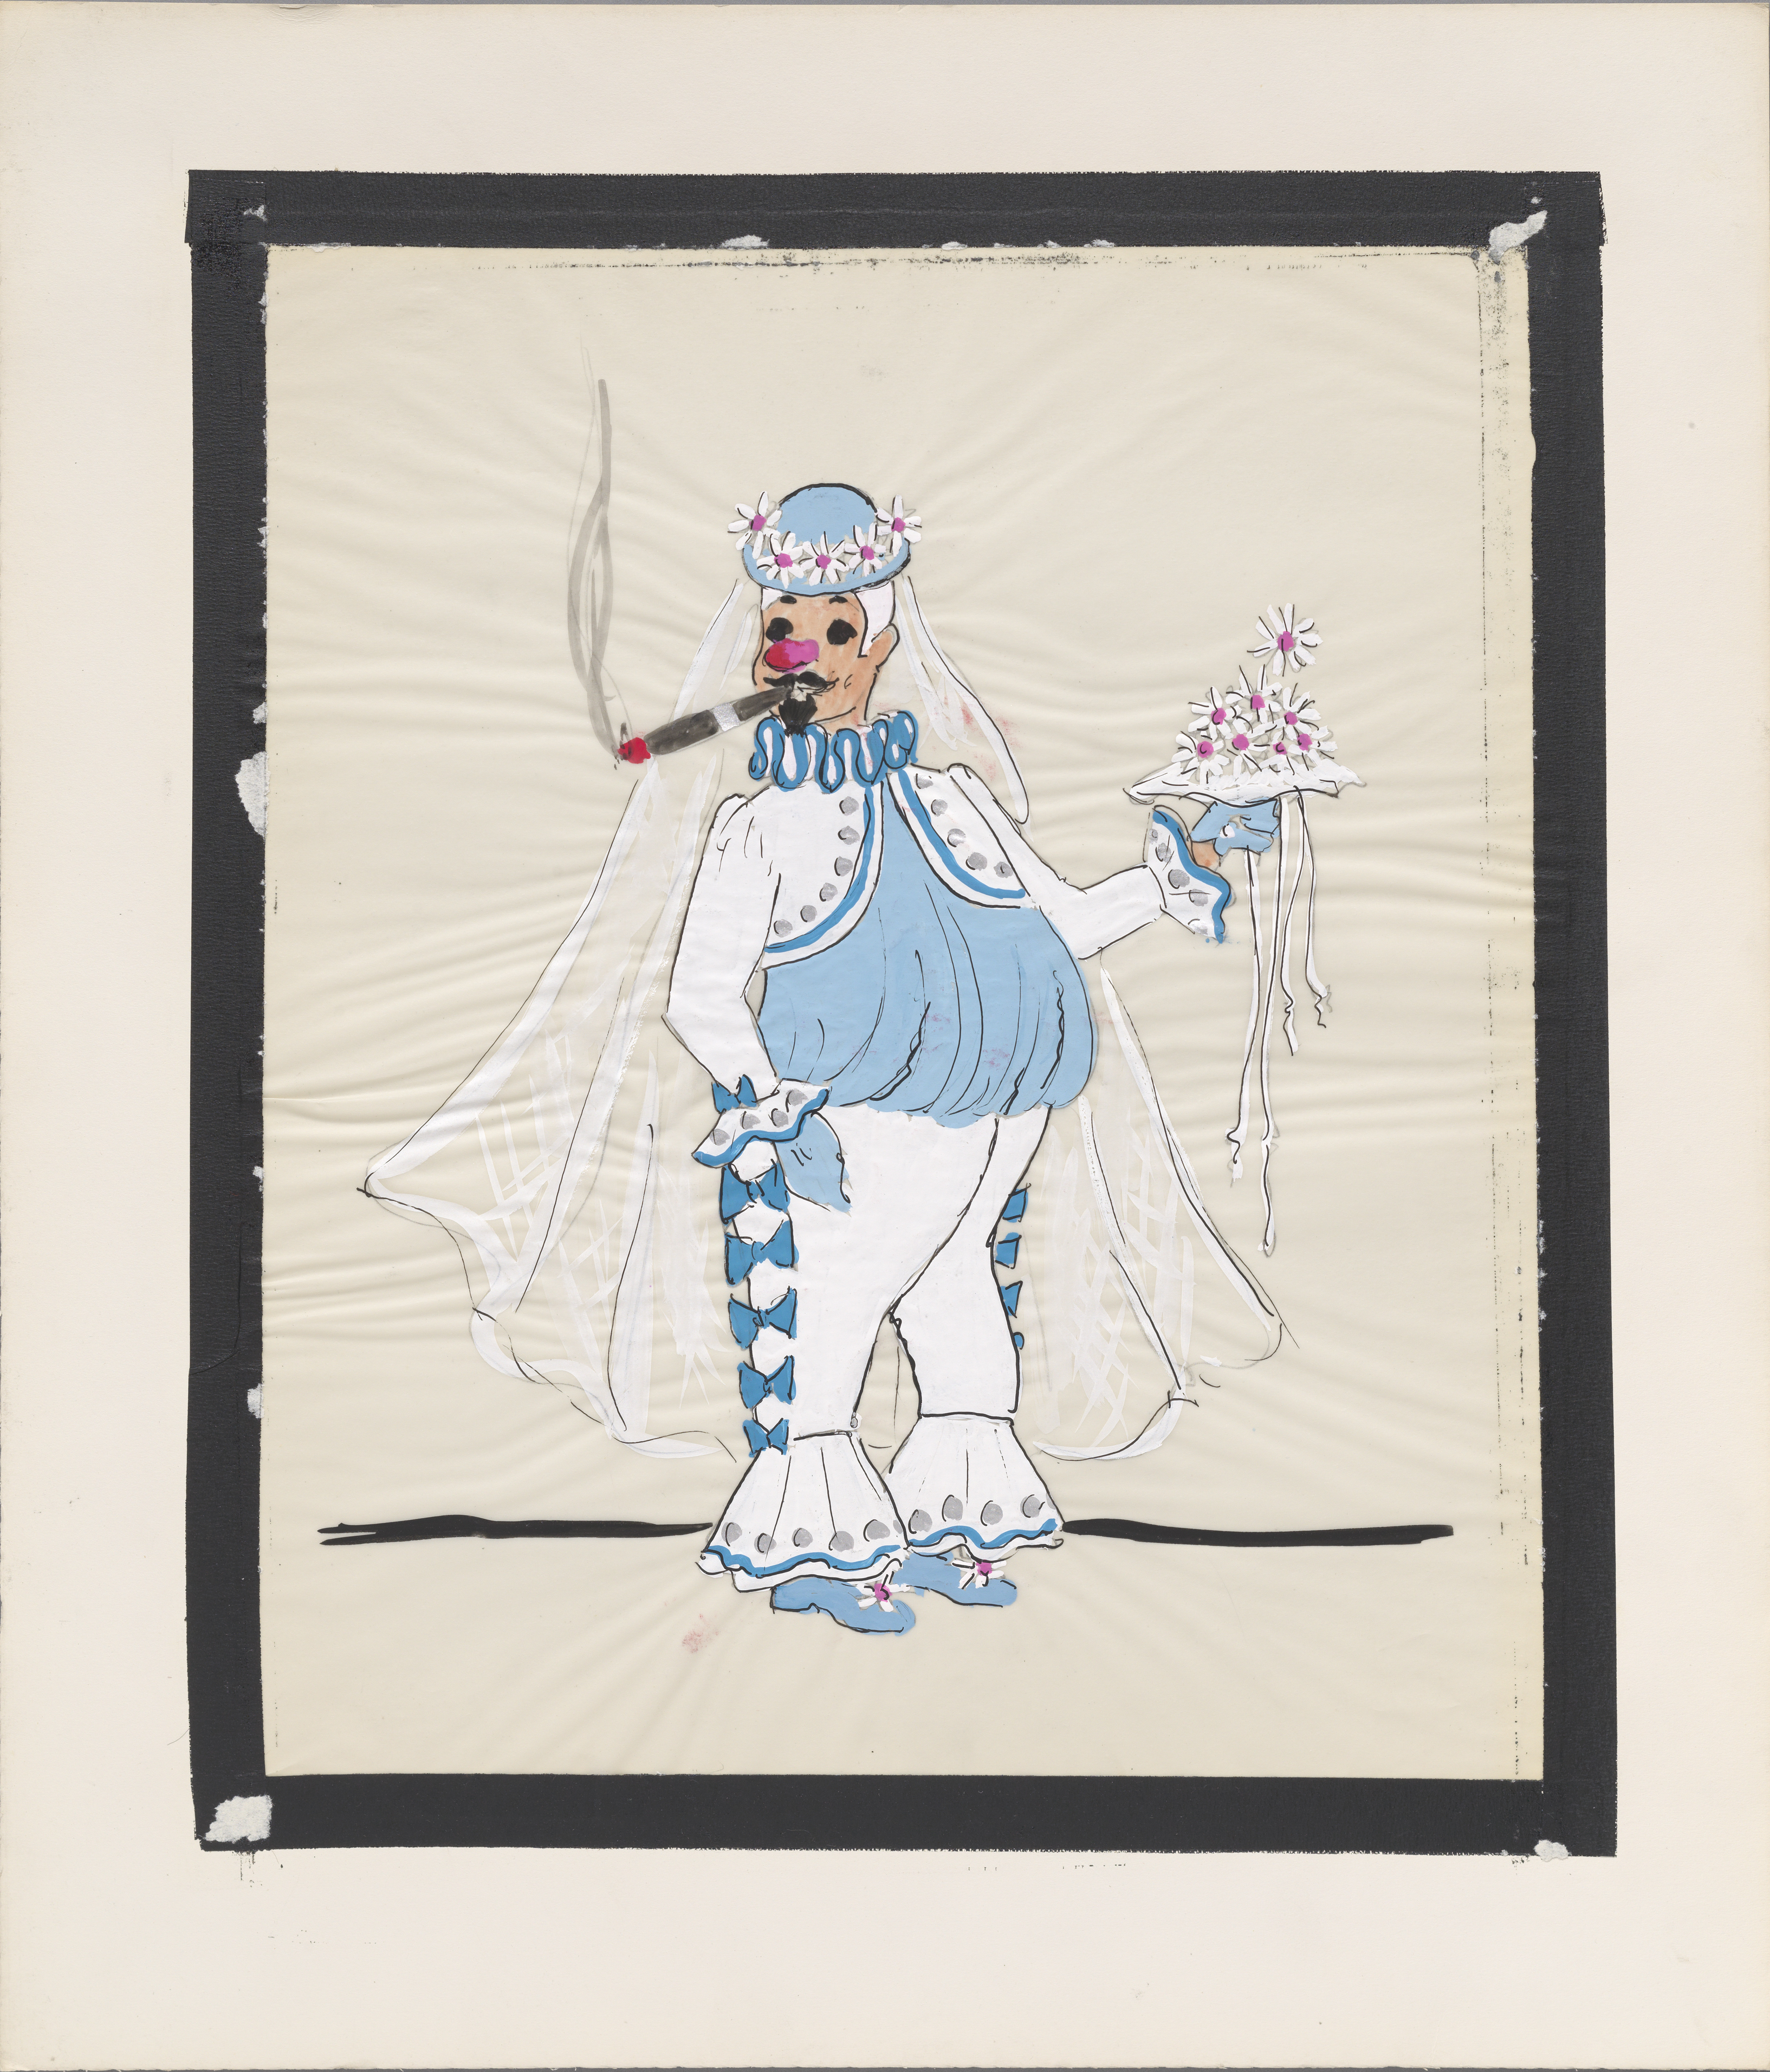 手绘草图。 服装设计描绘了一个雌雄同体的小丑人物，身穿短上衣，戴着面纱和抽着雪茄的花束。